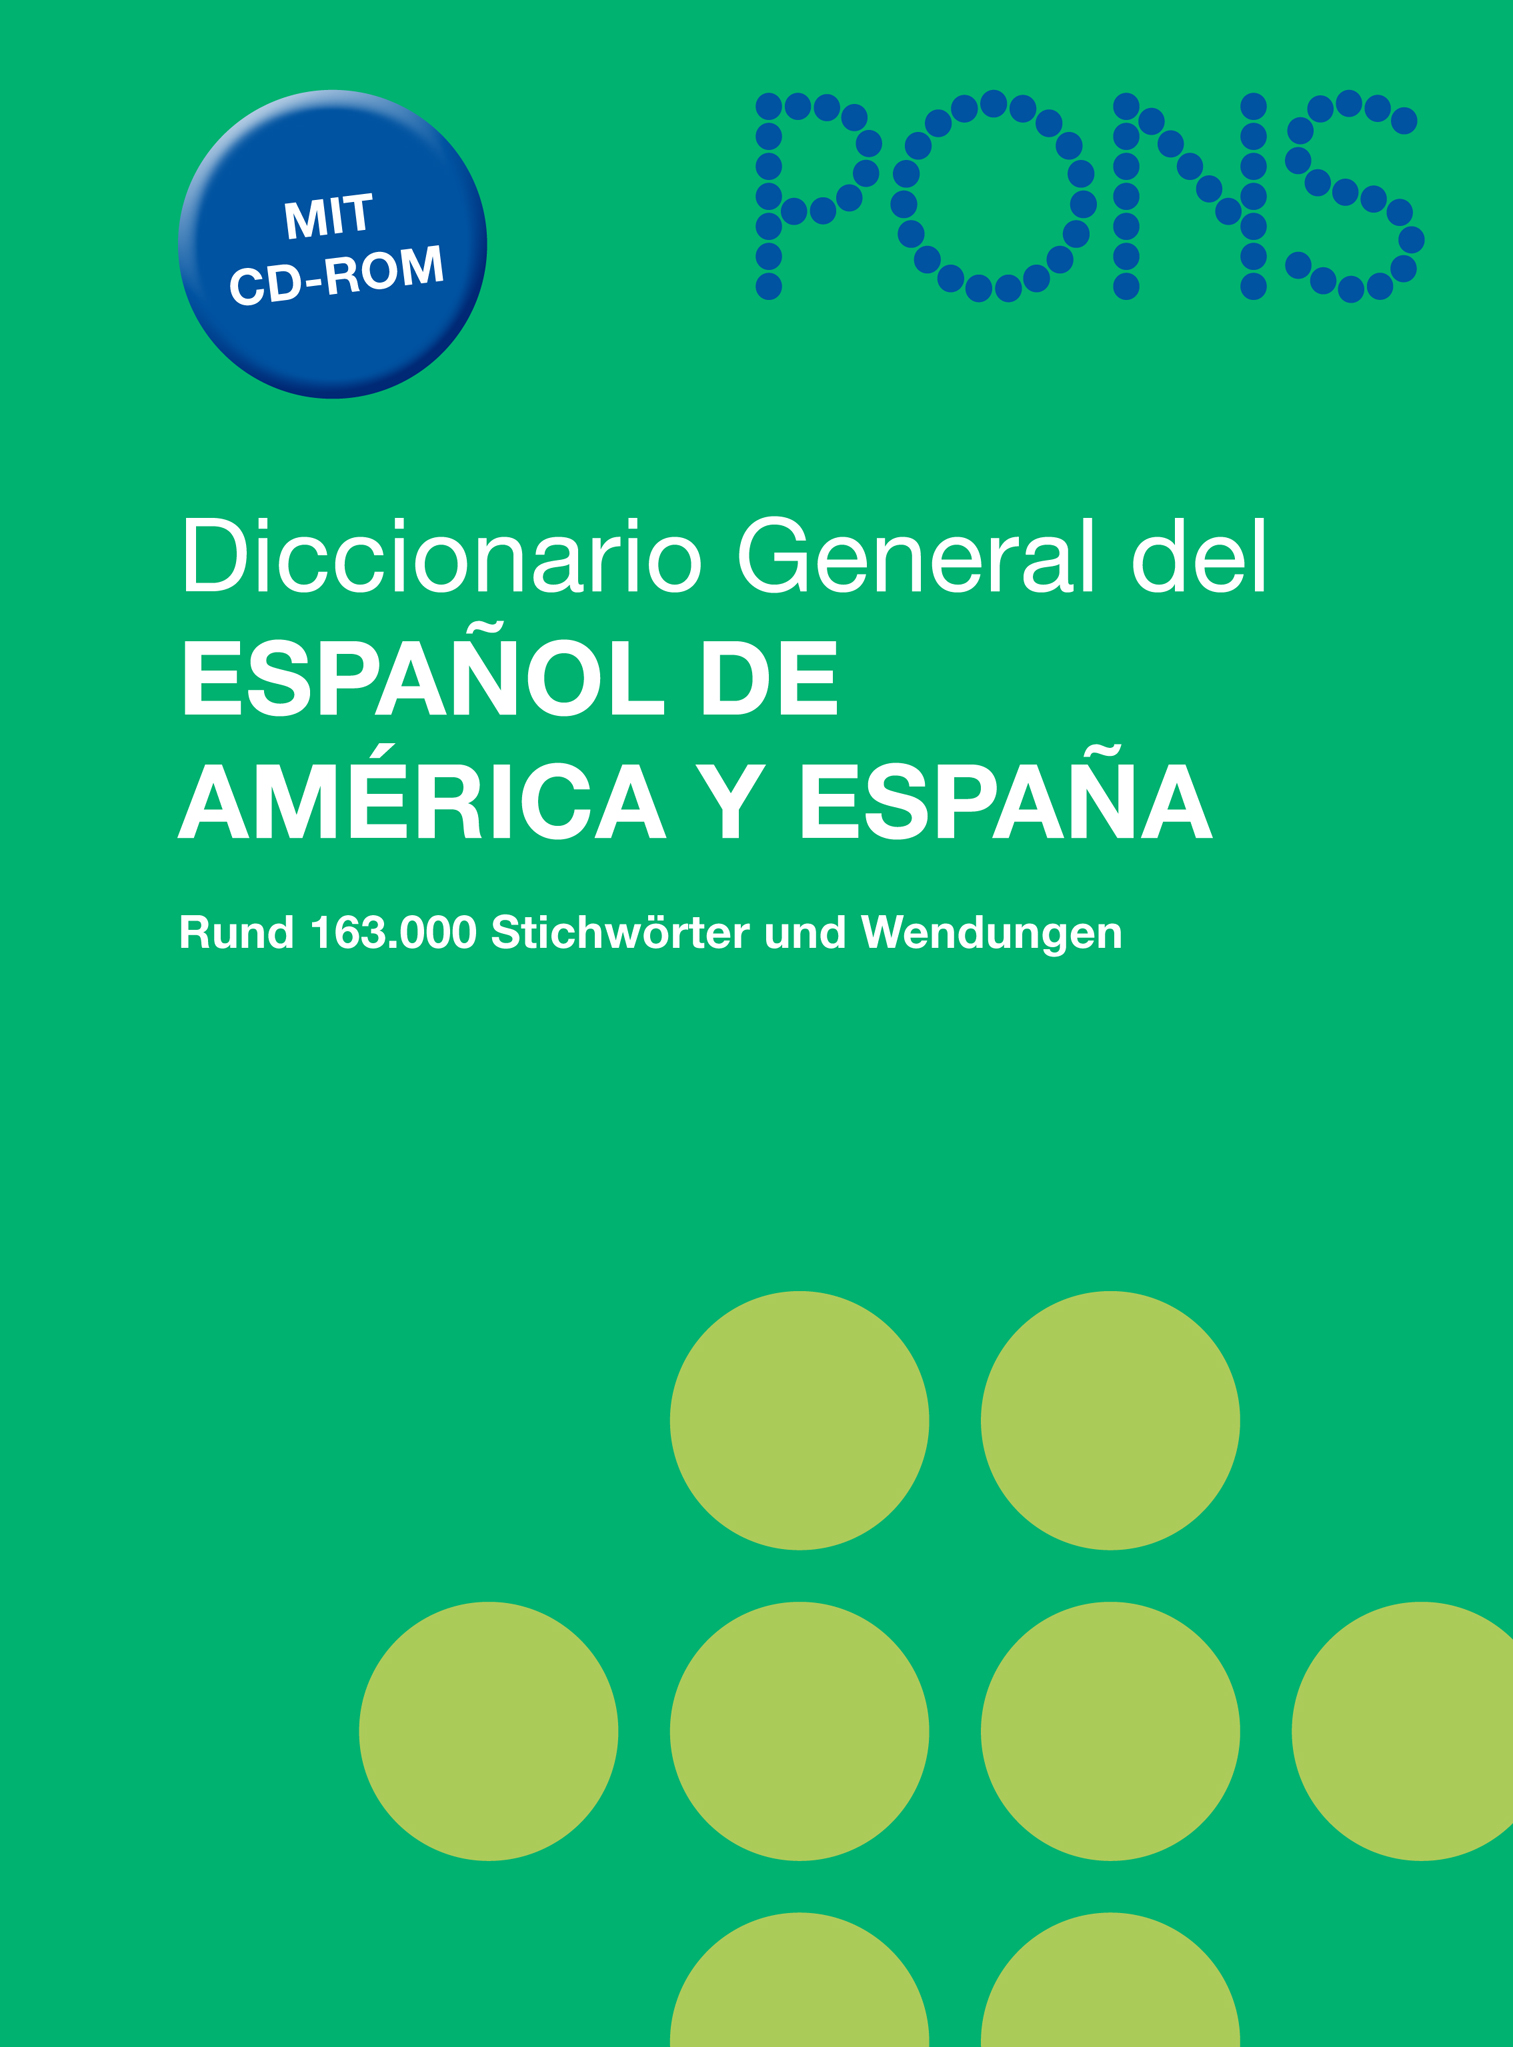 Diccionario General del espanol de America y Espana